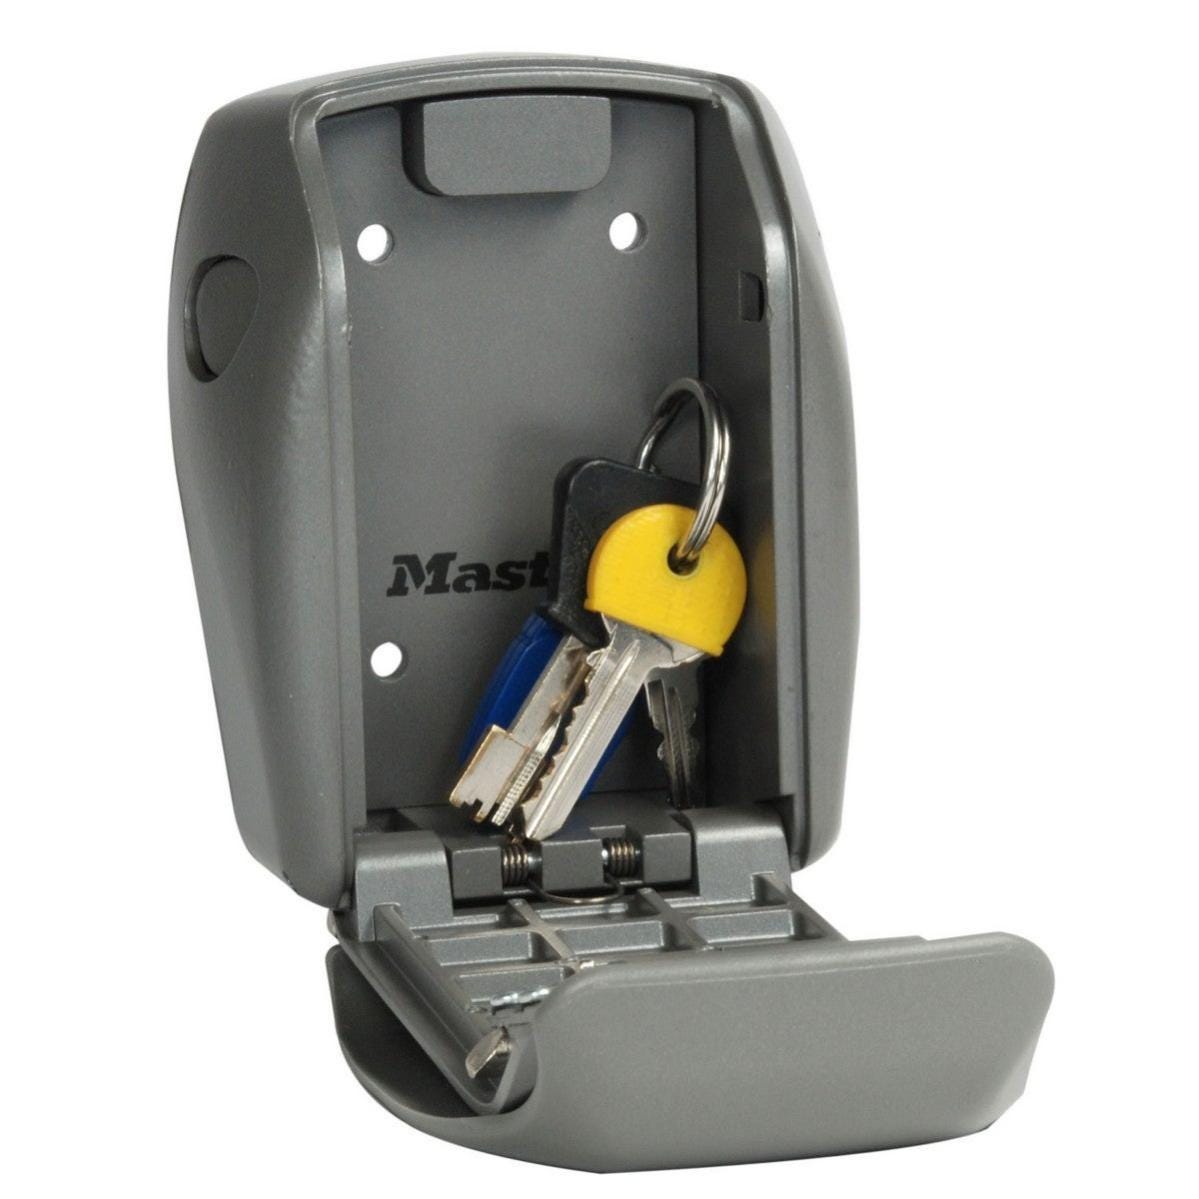 Boîte à clés Master Lock Select Smart